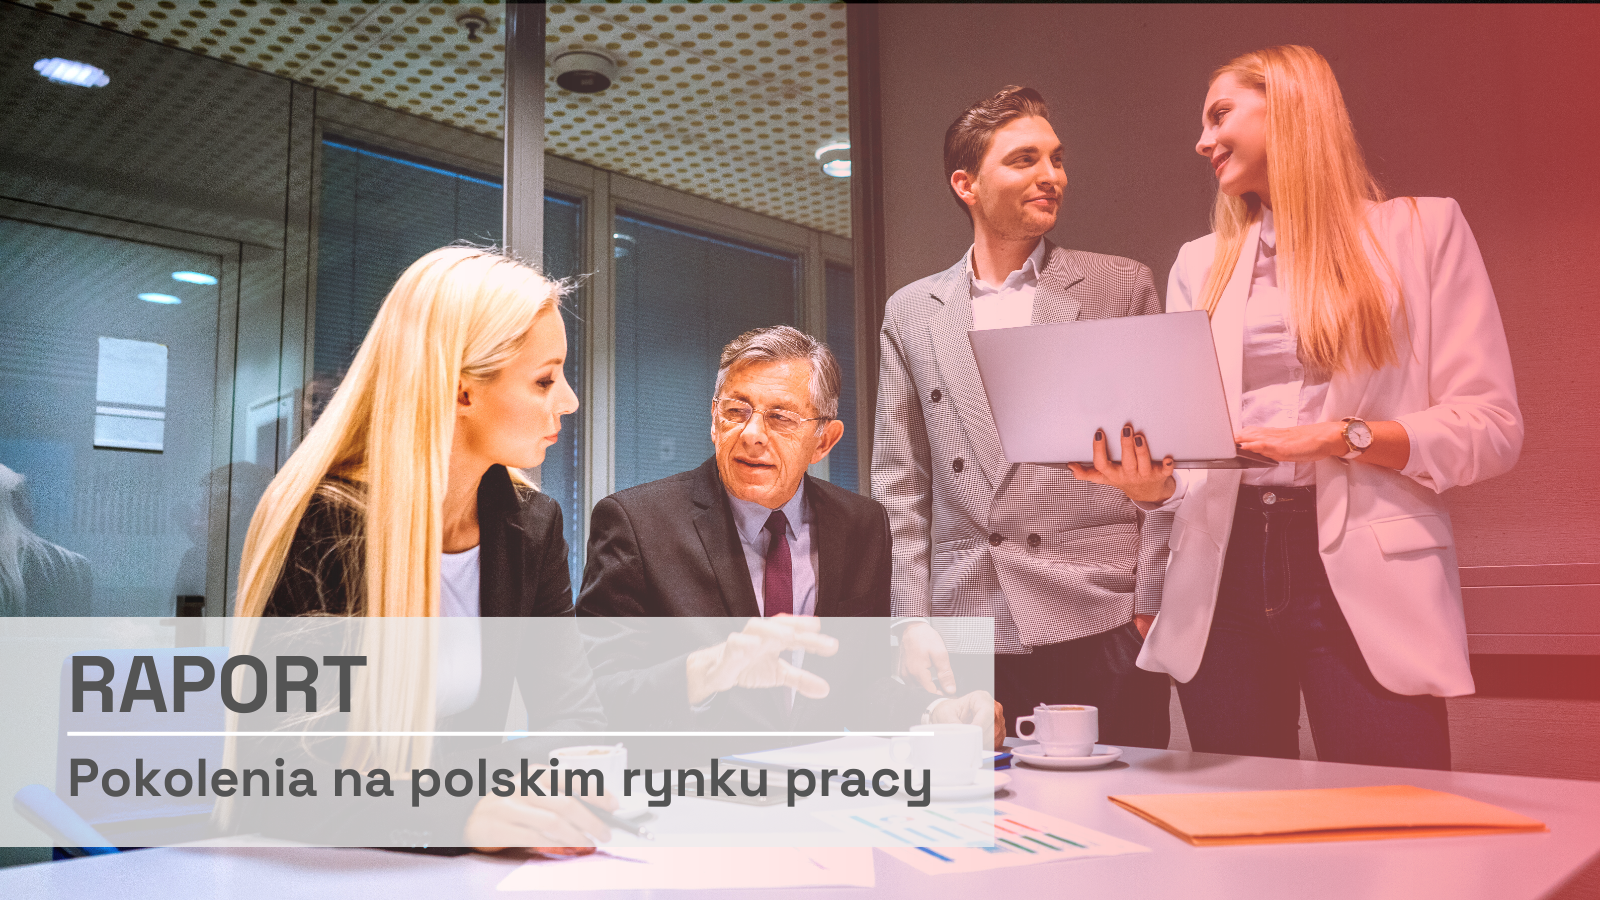 Pokolenia na polskim rynku pracy [RAPORT] Raport mediarun raport pokolenia